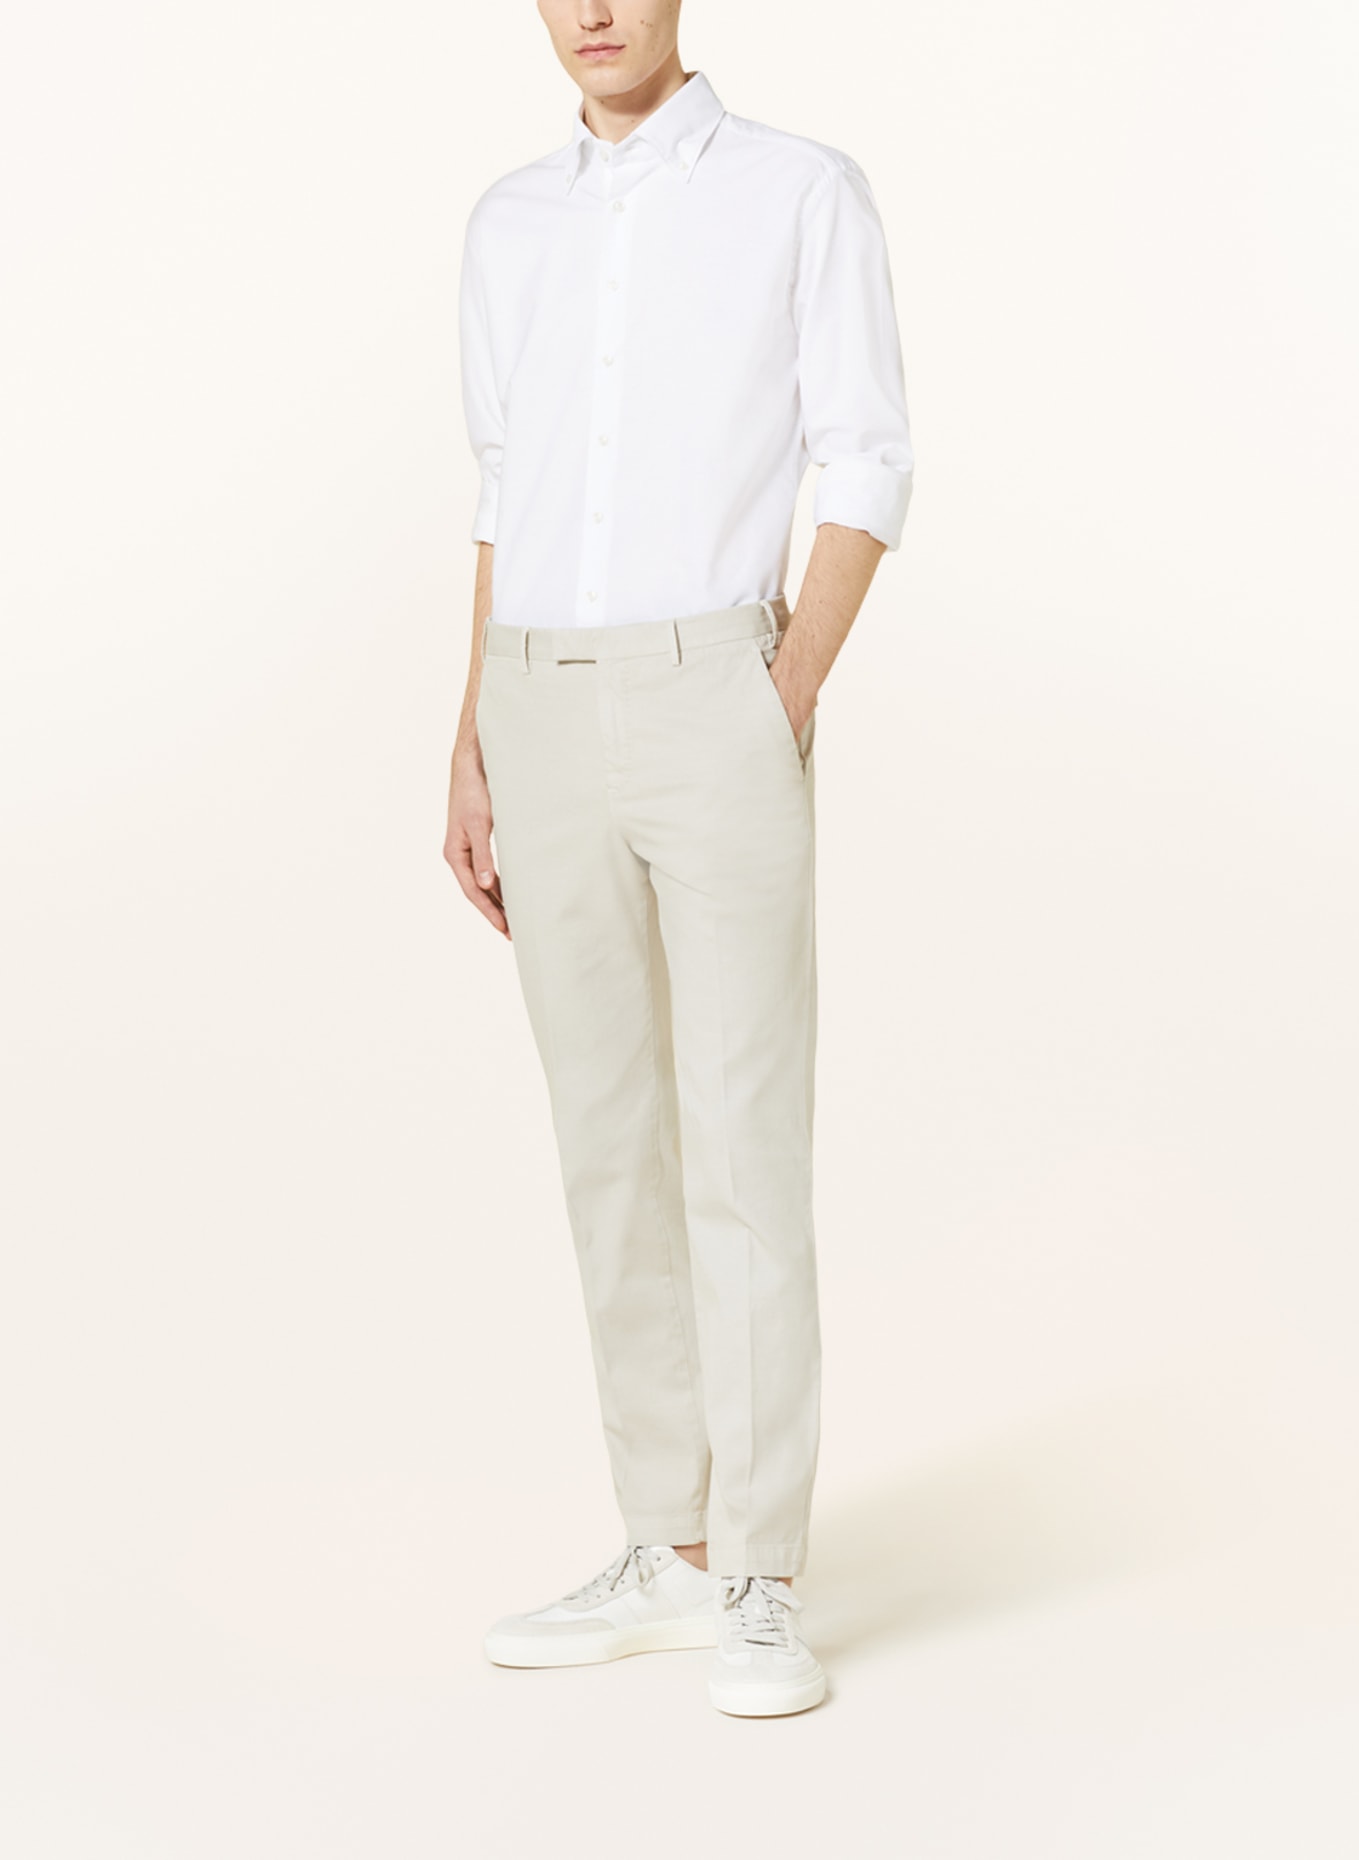 ARTIGIANO Shirt classic fit, Color: WHITE (Image 2)